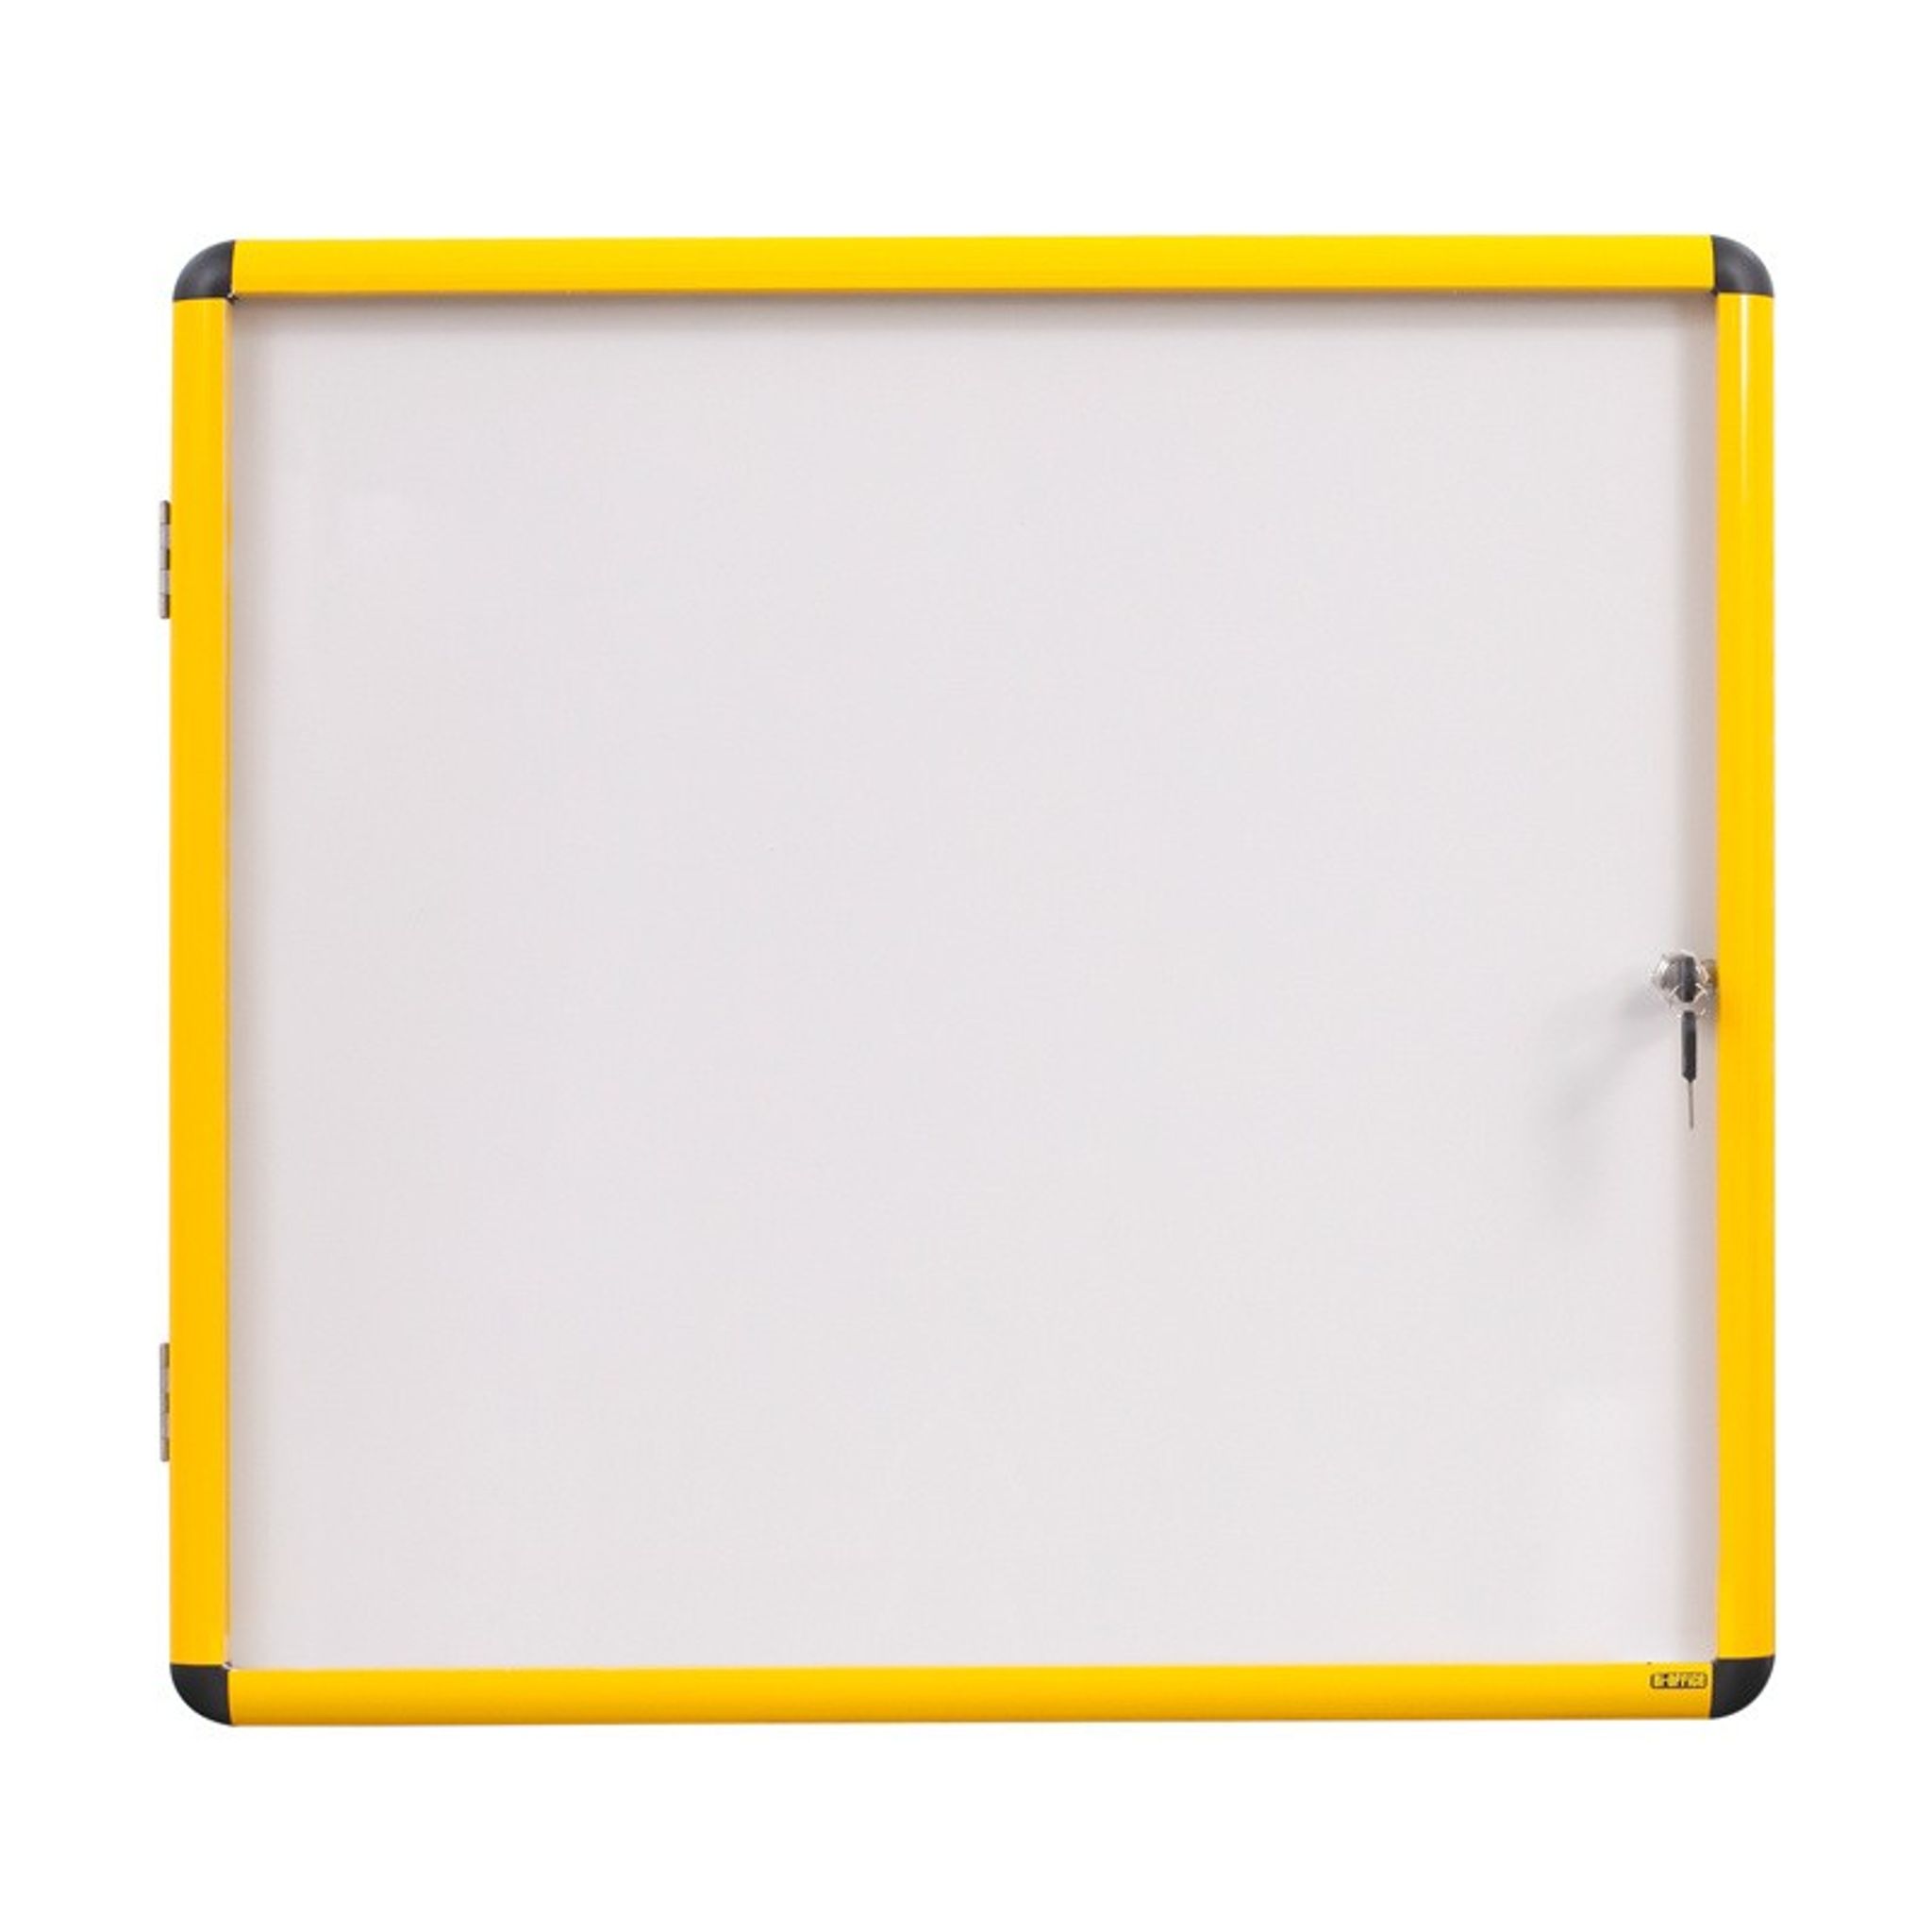 Gablota wewnętrzna z białą powierzchnią magnetyczną, żółta ramka, 500 x 674 mm (4xA4)